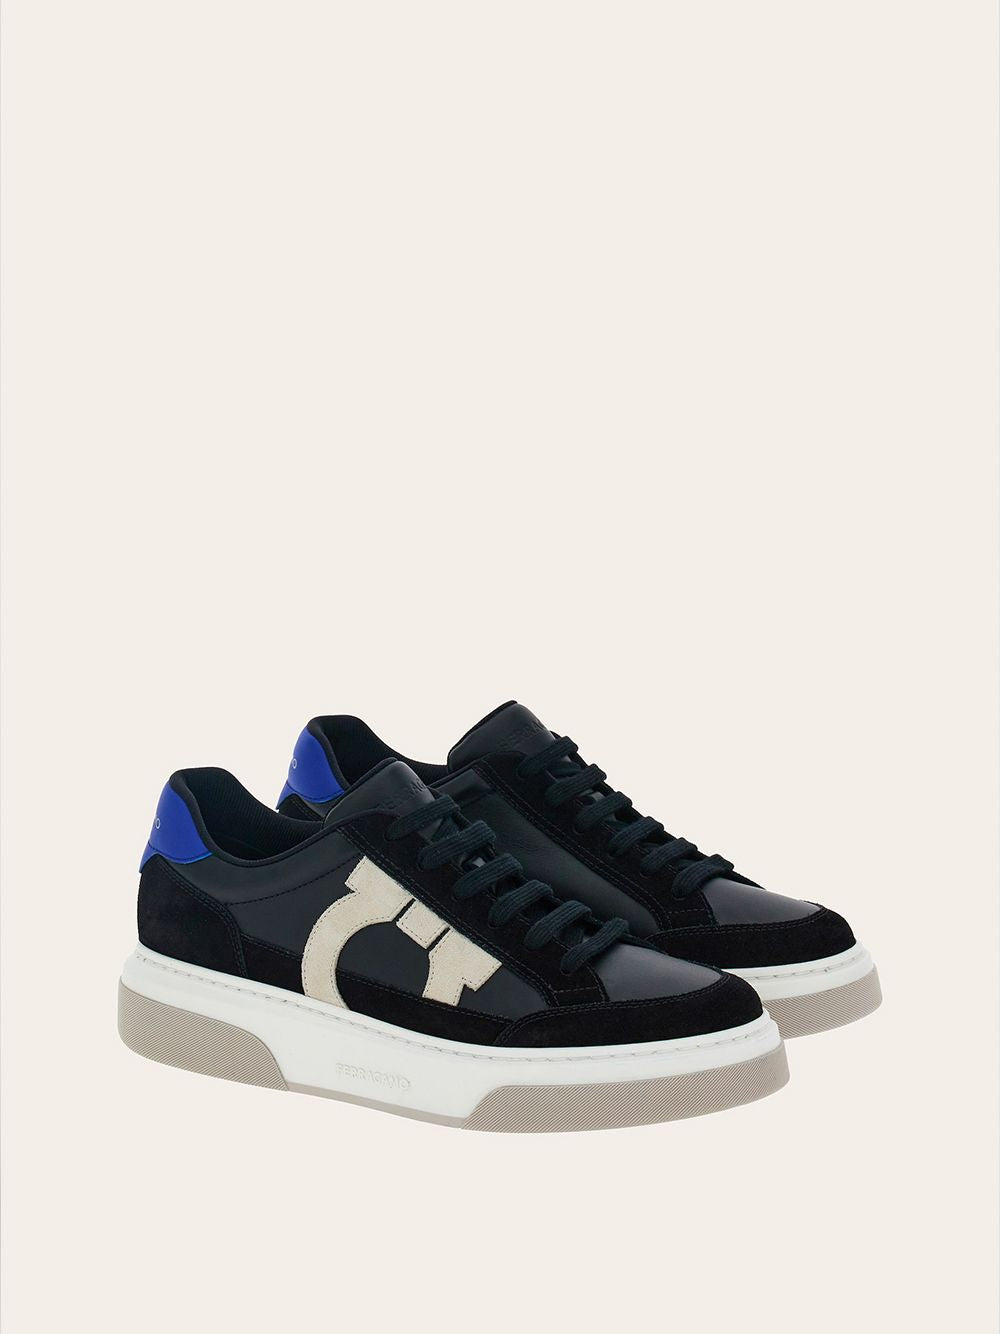 Shop Ferragamo Sleek Black Leather Sneakers For Men